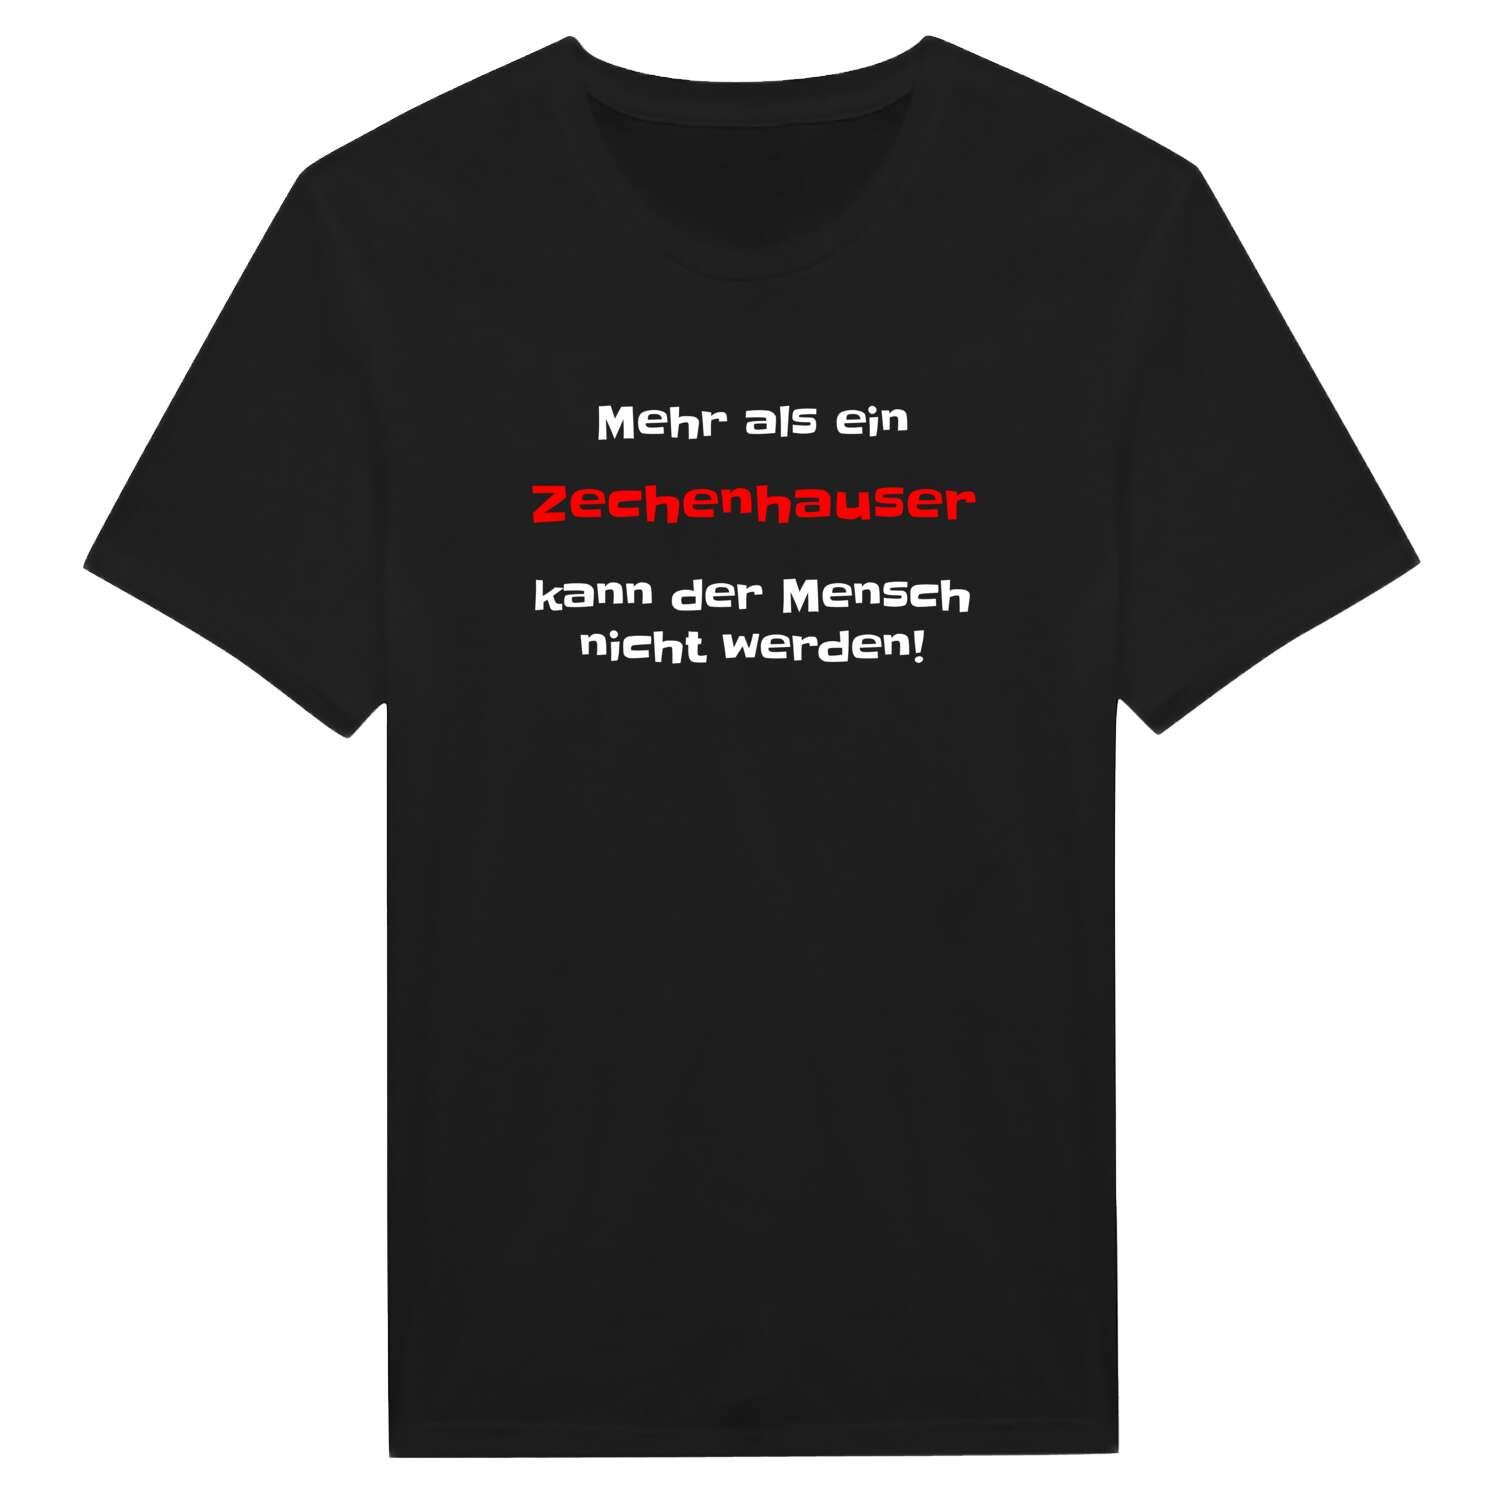 Zechenhaus T-Shirt »Mehr als ein«